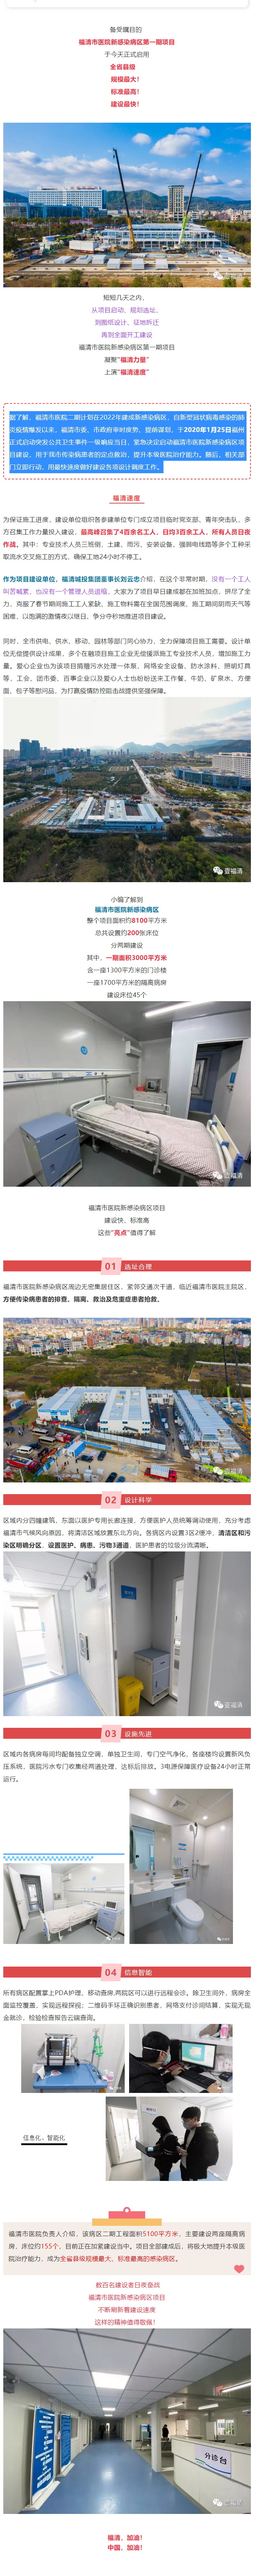 福清市医院新感染病区启用  见证福清速度